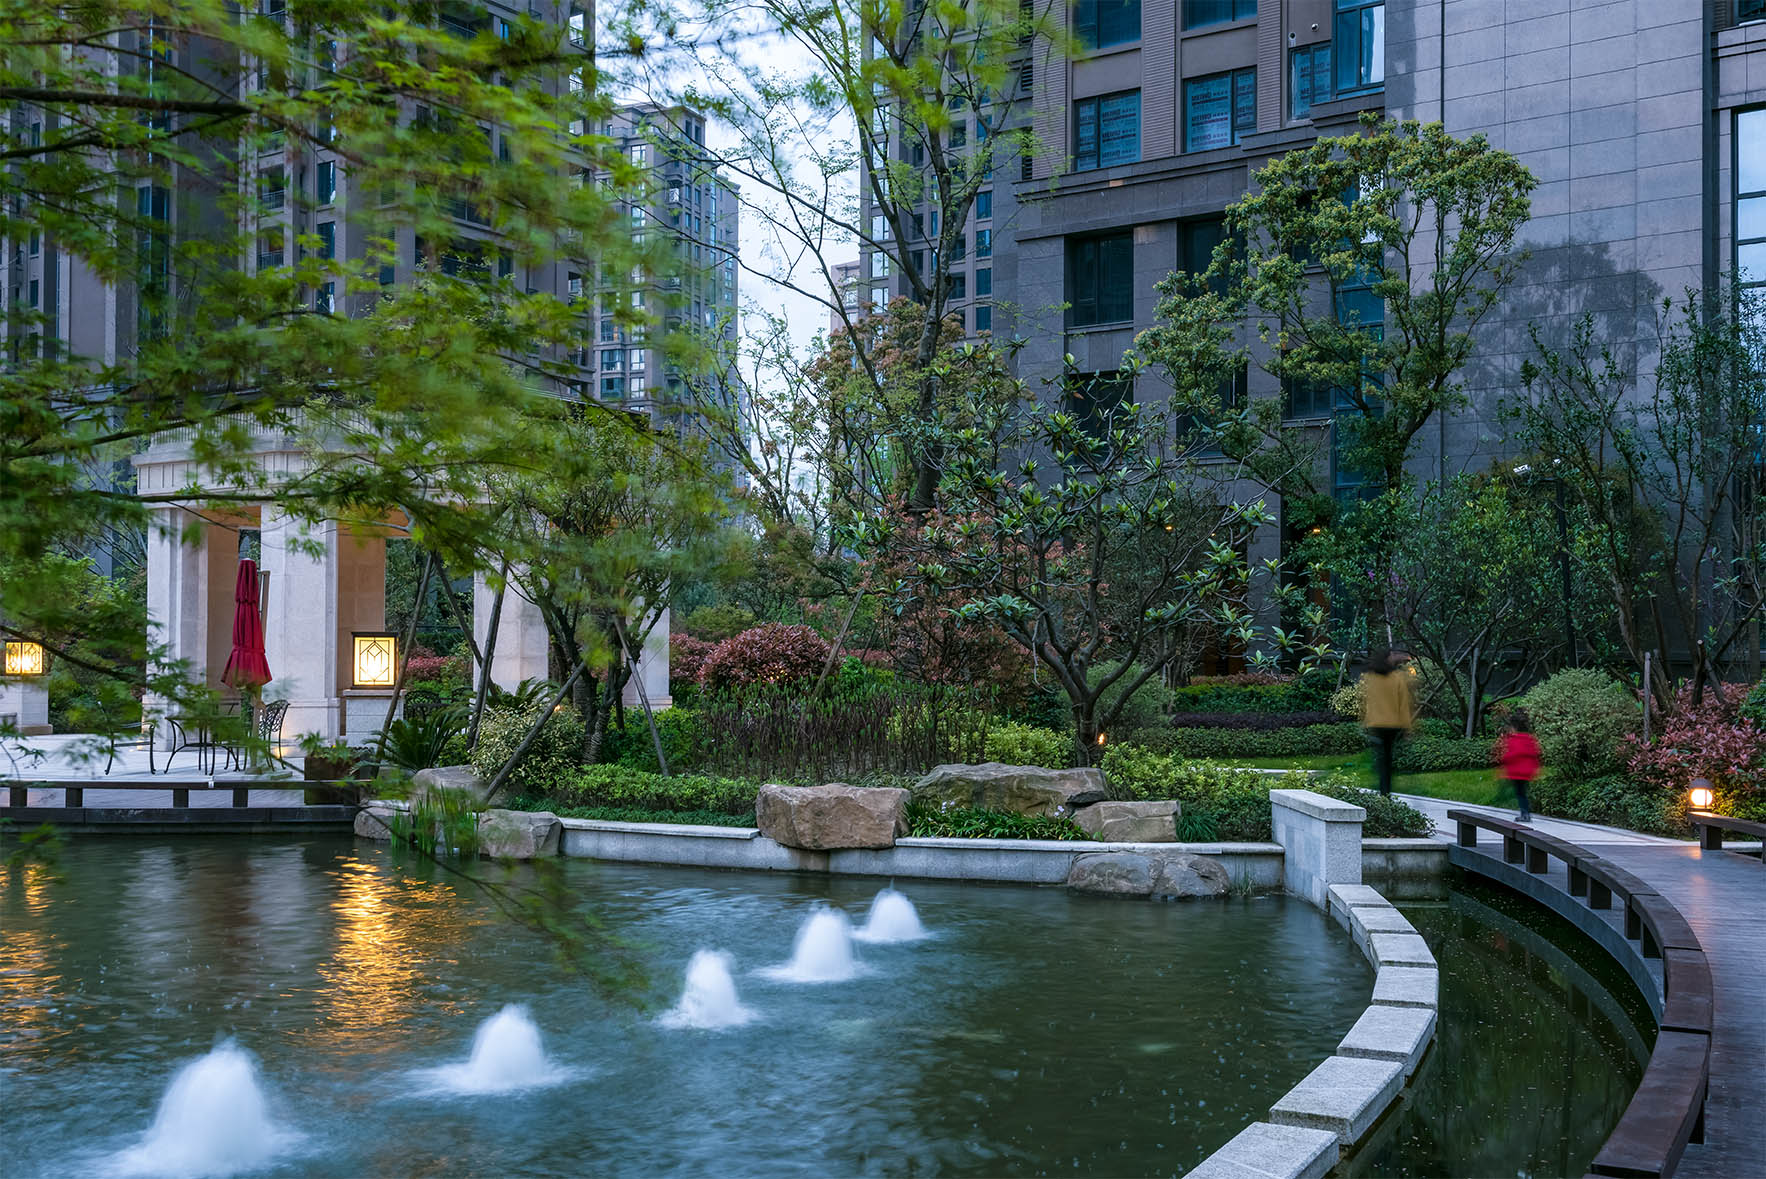 康城国际花园 | 理想四维地产集团 <br/>Kangcheng International Garden | Idea Siwei Properties Group